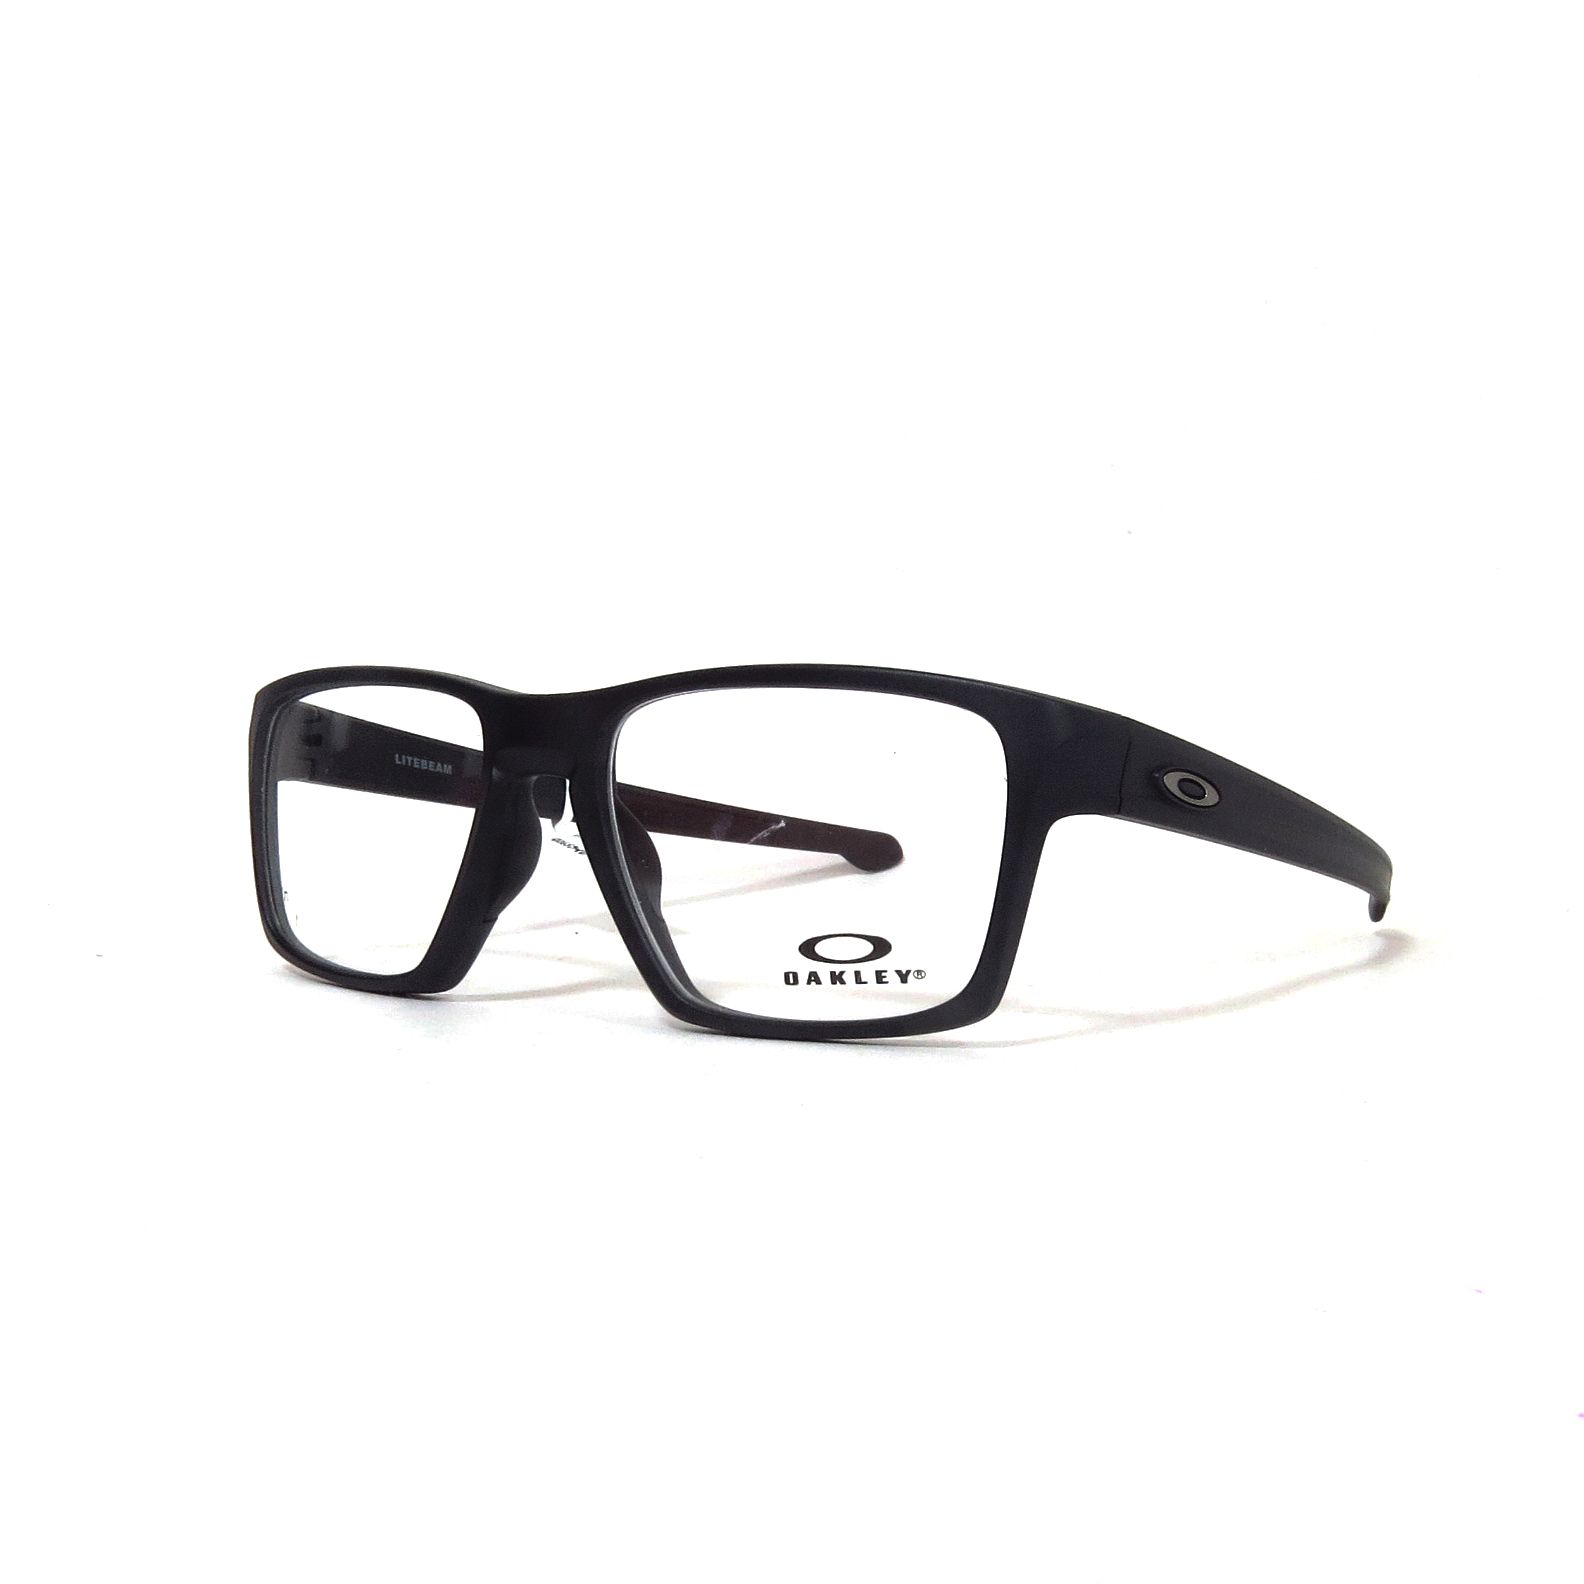 Óptica las | OAKLEY - 8140 - Óptica las gafas